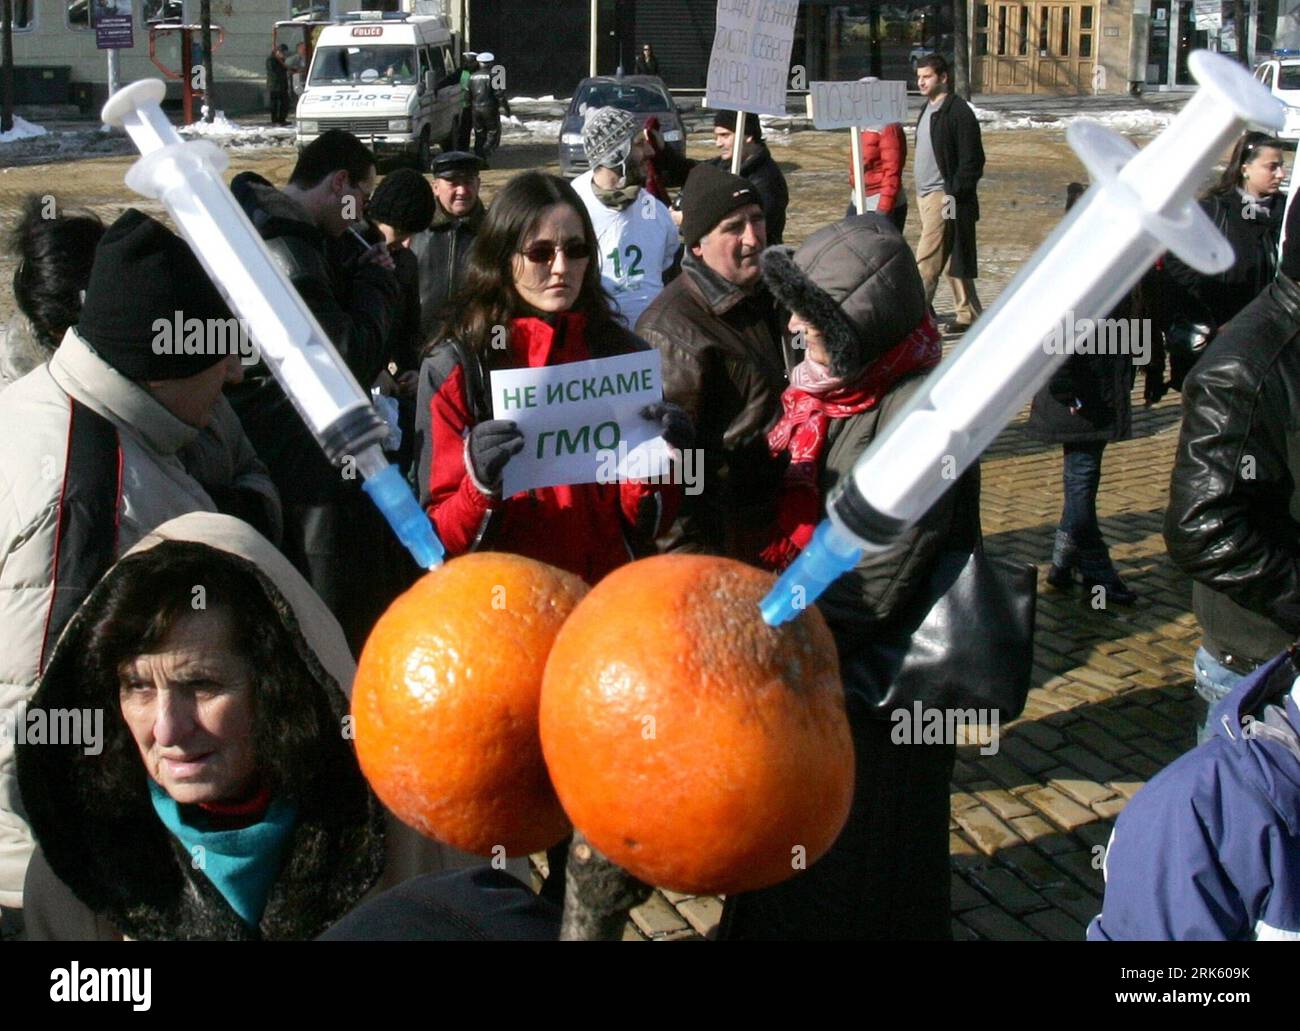 Bildnummer: 53772665  Datum: 03.02.2010  Copyright: imago/Xinhua (100203) -- SOFIA, Feb. 3, 2010 (Xinhua) -- Demonstrators take part in a protest against the law amendments to loose limitation on genetically modified organisms (GMO), on the square of the parliament in Sofia, Bulgaria, Feb. 3, 2010. (Xinhua/bta) (hdt) BULGARIA-GMO-LAW AMENDMENT-PROTEST PUBLICATIONxNOTxINxCHN Protest gegen Gesetzesänderung genetisch veränderte Organismen premiumd kbdig xsk 2010 quer o0 Transgene    Bildnummer 53772665 Date 03 02 2010 Copyright Imago XINHUA  Sofia Feb 3 2010 XINHUA demonstrator Take Part in a Pro Stock Photo